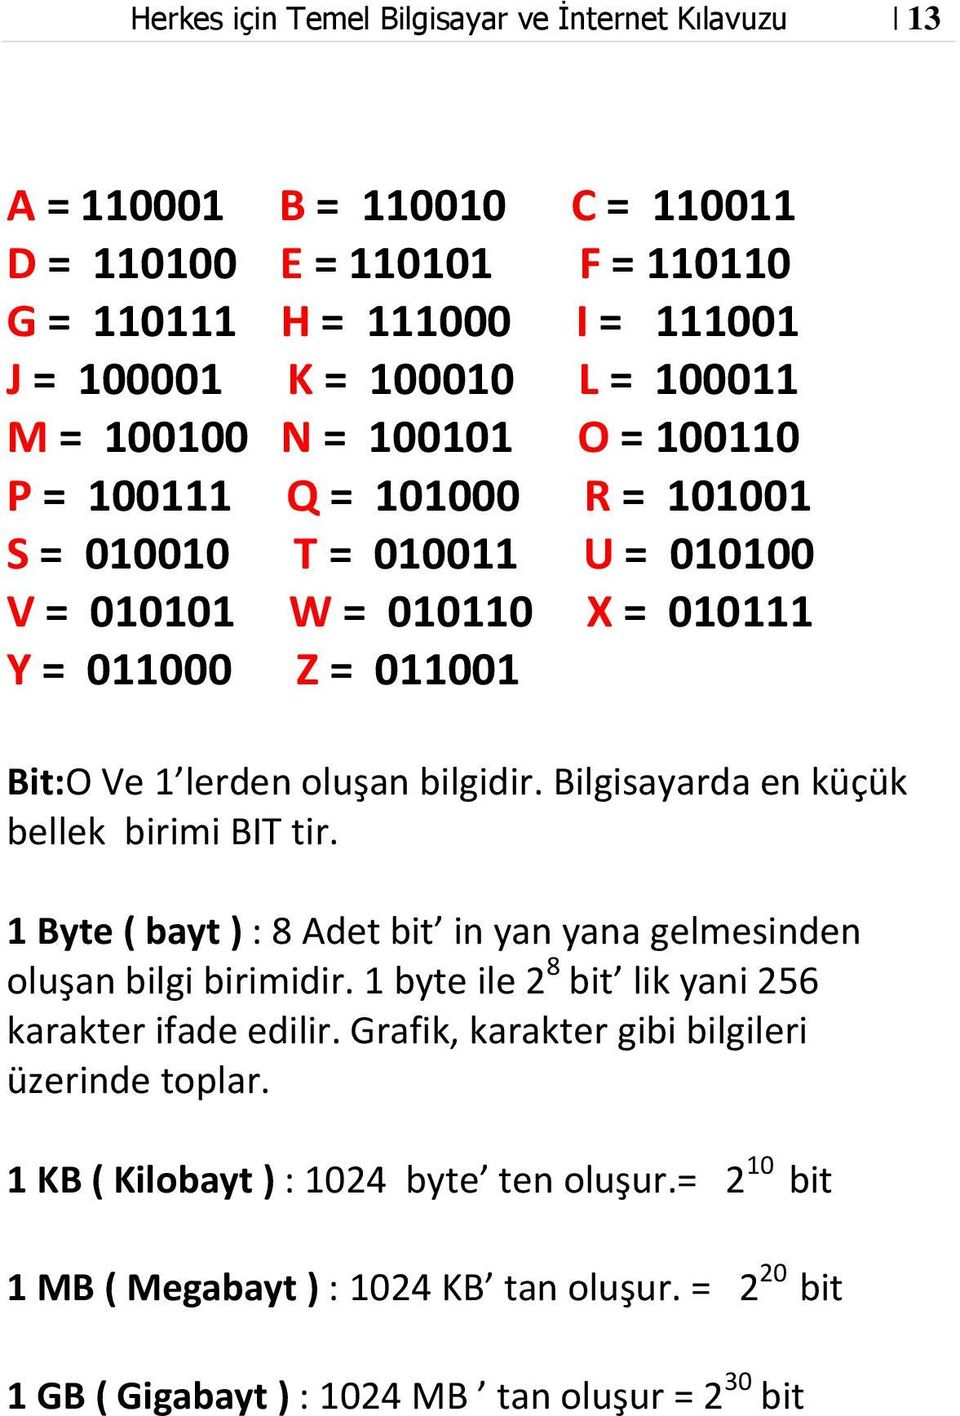 Bilgisayarda en küçük bellek birimi BIT tir. 1 Byte ( bayt ) : 8 Adet bit in yan yana gelmesinden oluşan bilgi birimidir. 1 byte ile 2 8 bit lik yani 256 karakter ifade edilir.